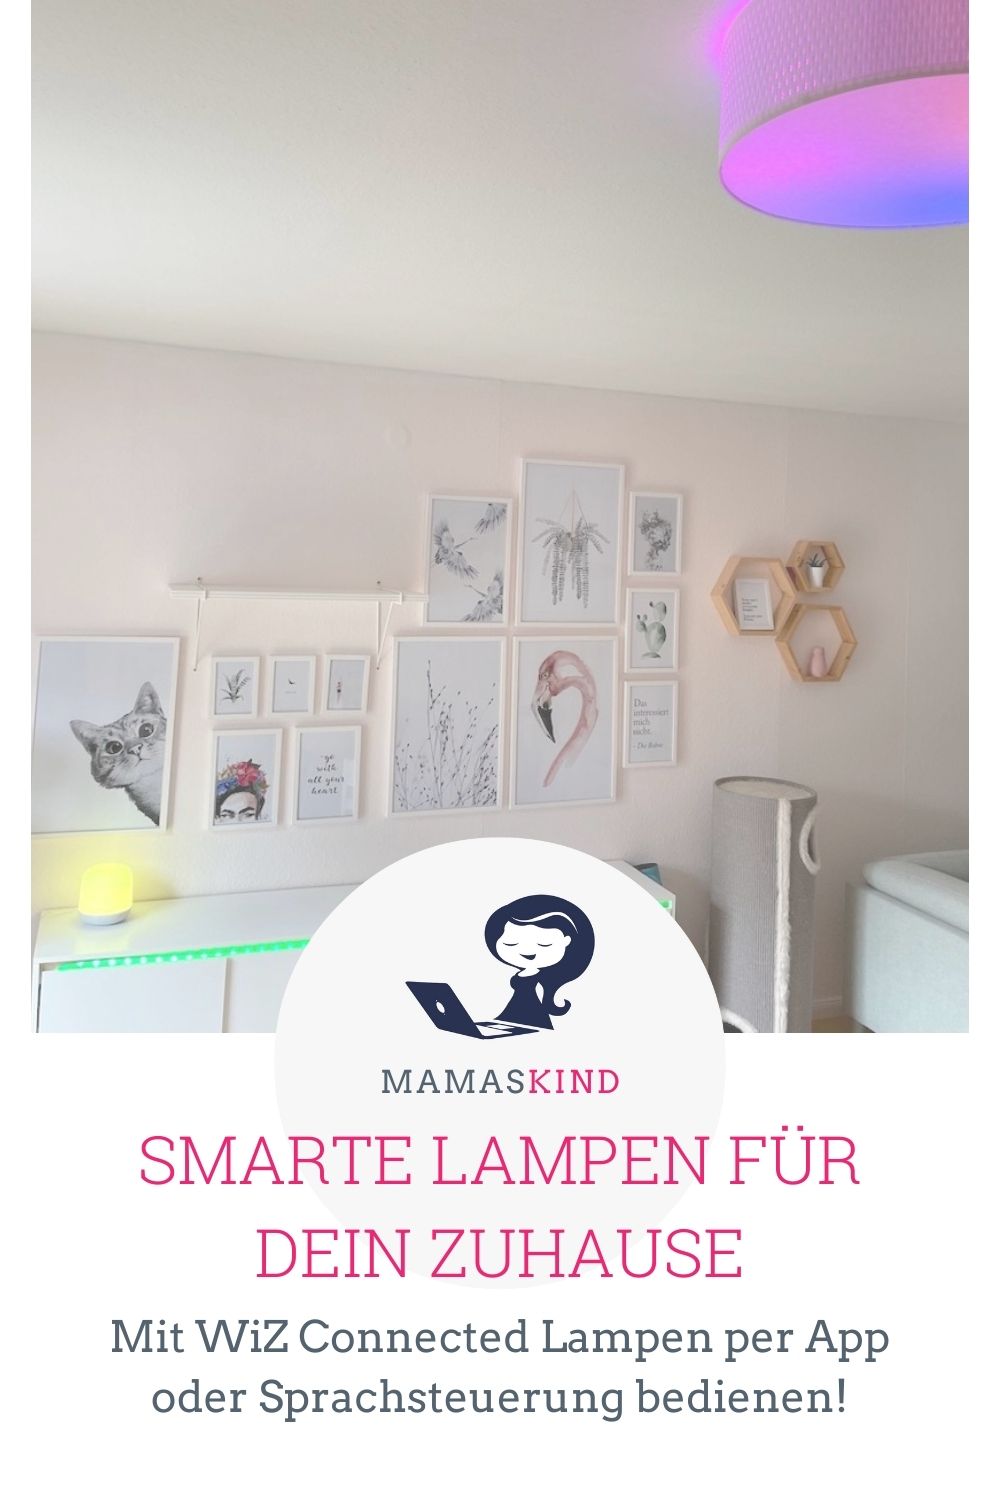 Smarte Lampen für dein Zuhause - Lampen per App steuern - mamaskind.de